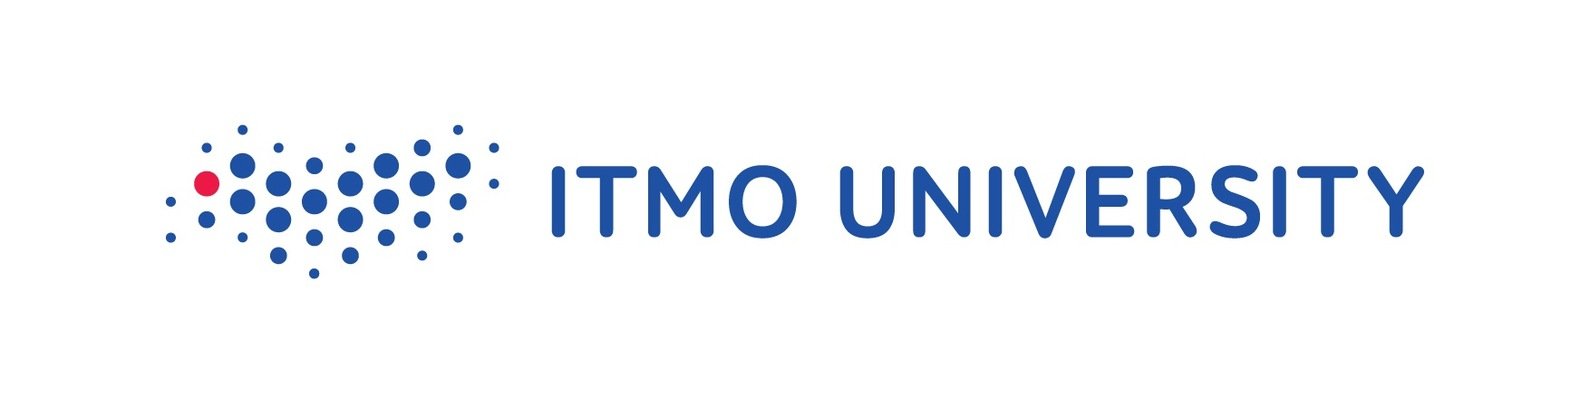 Университет ИТМО logo